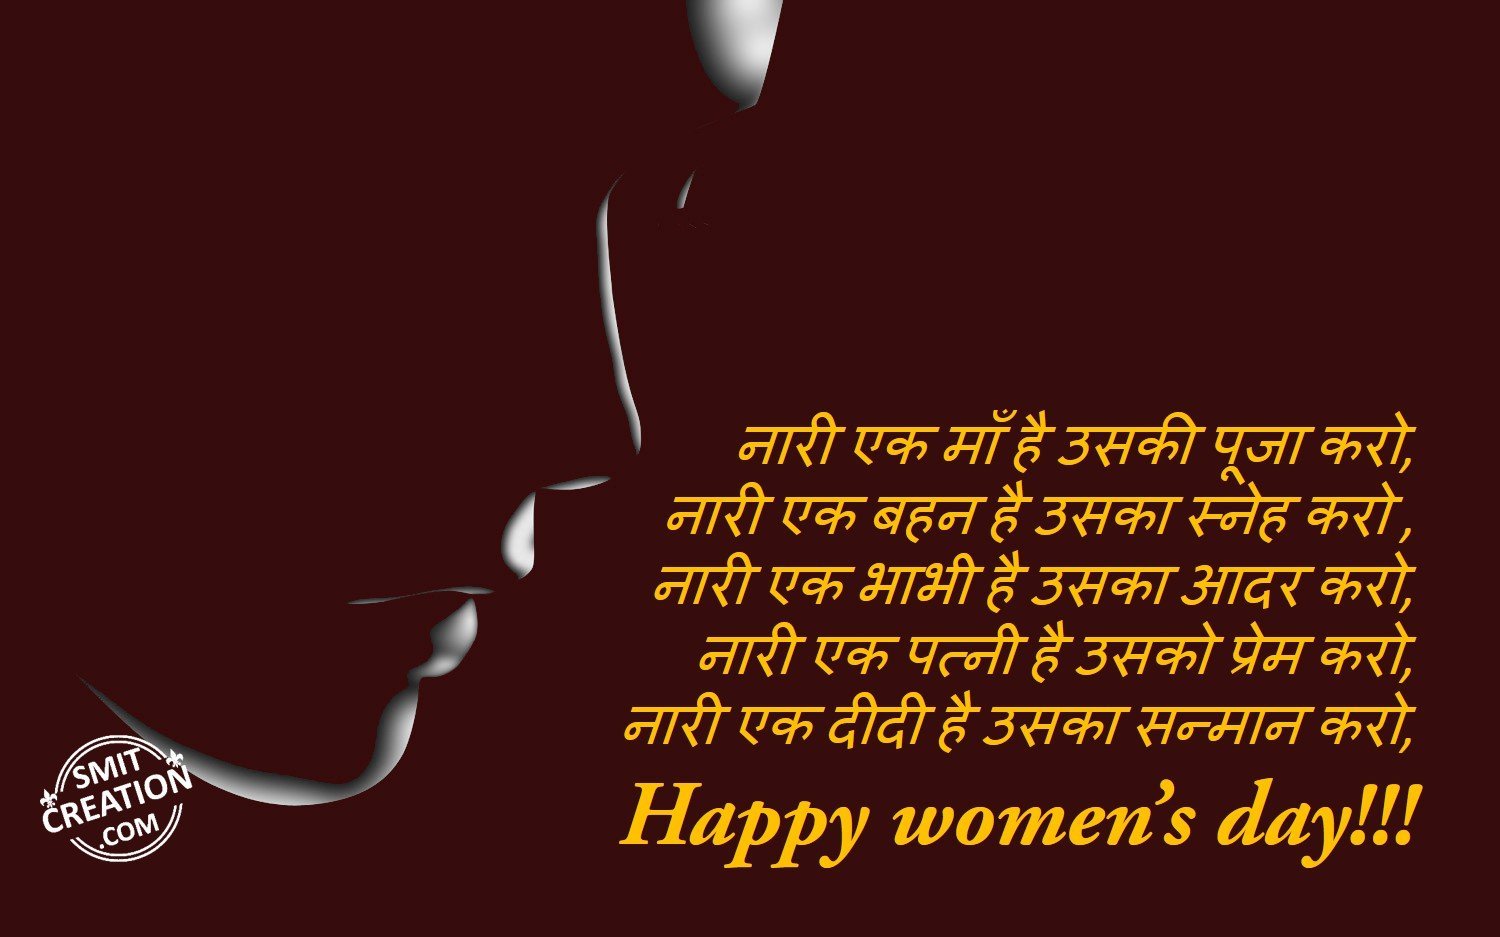 Shayari on women's strength in hindi for happy women's day